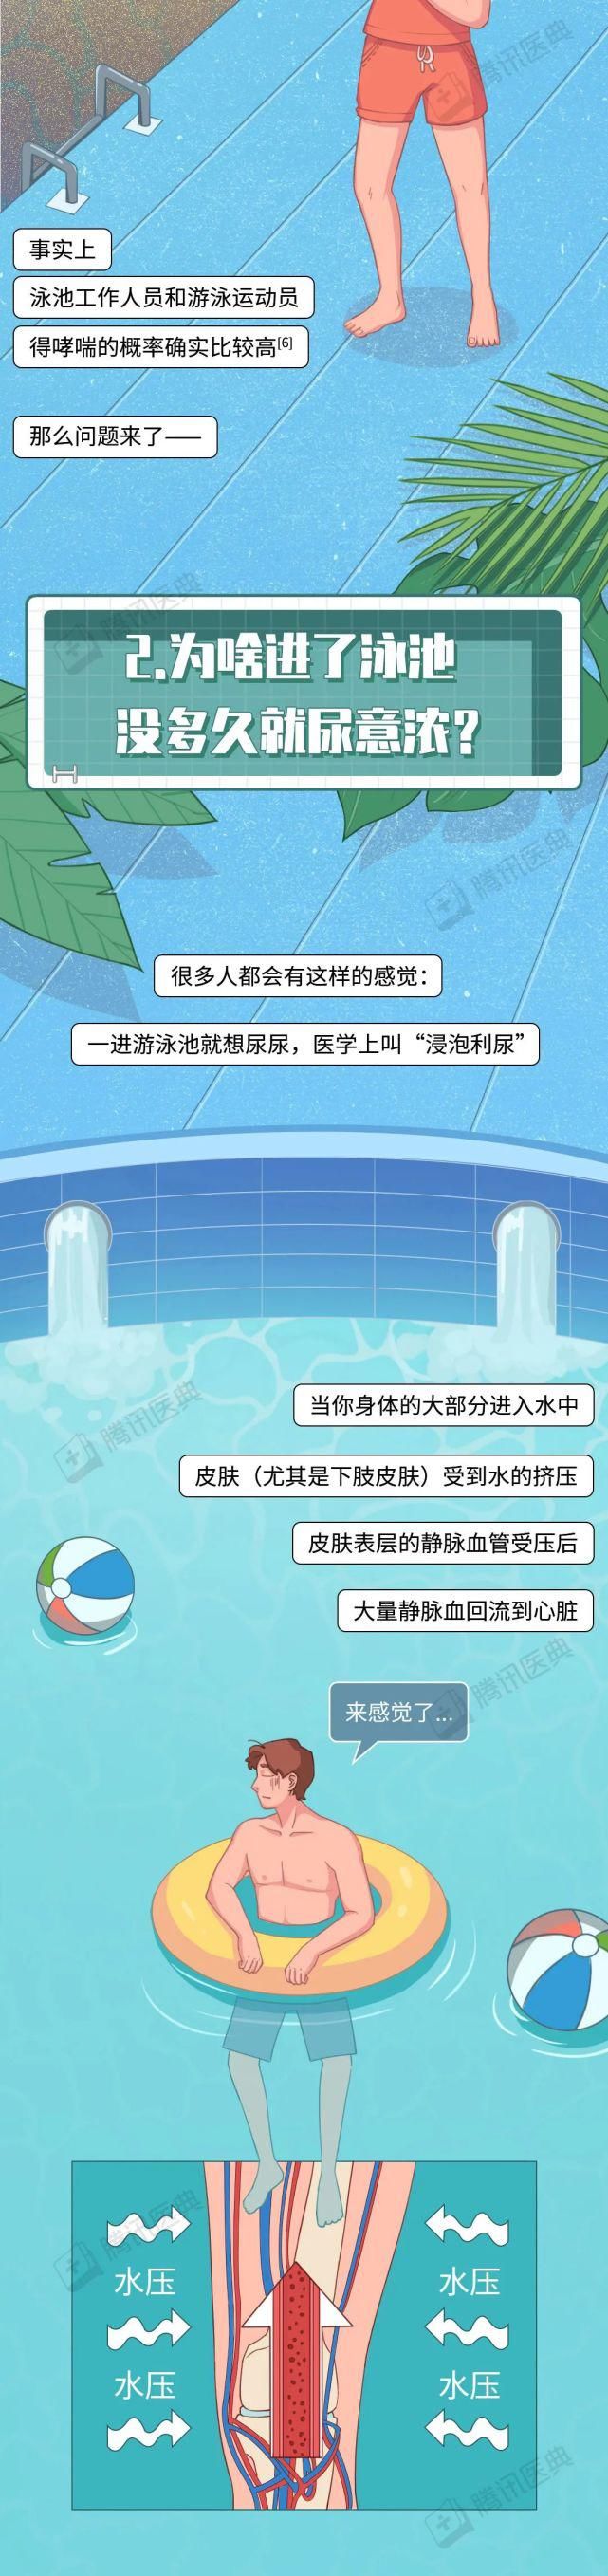 北京协和医学院|游泳池里能有多少尿？这个令人窒息的问题，终于有答案了